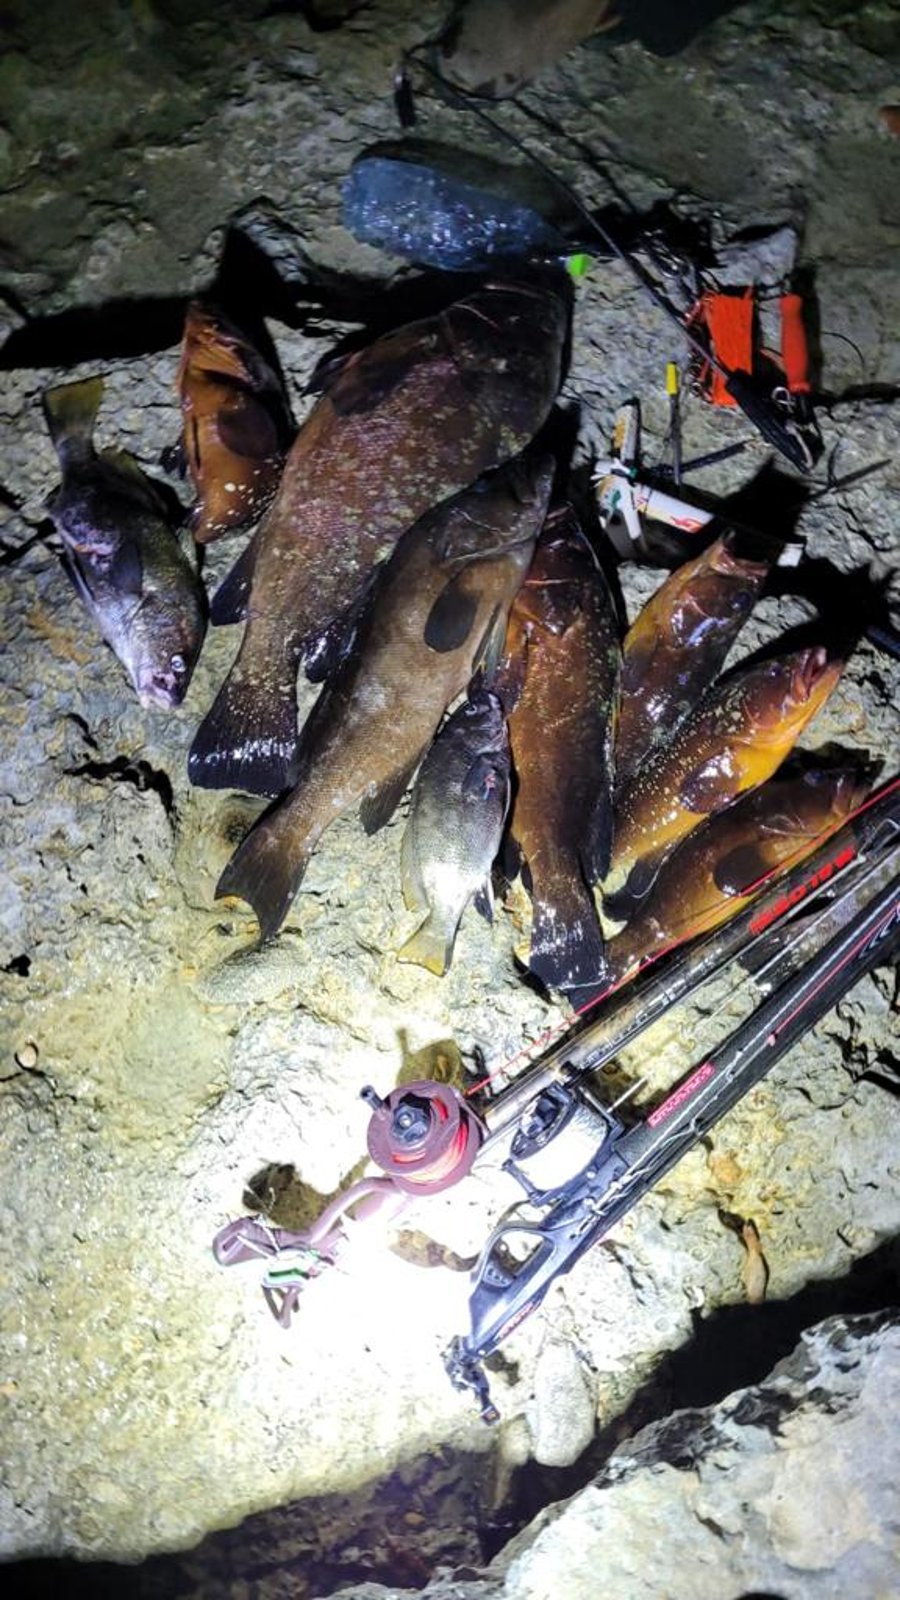 ליד ראש הנקרה: חשודים נתפסו בדיג של ערכי טבע מוגנים